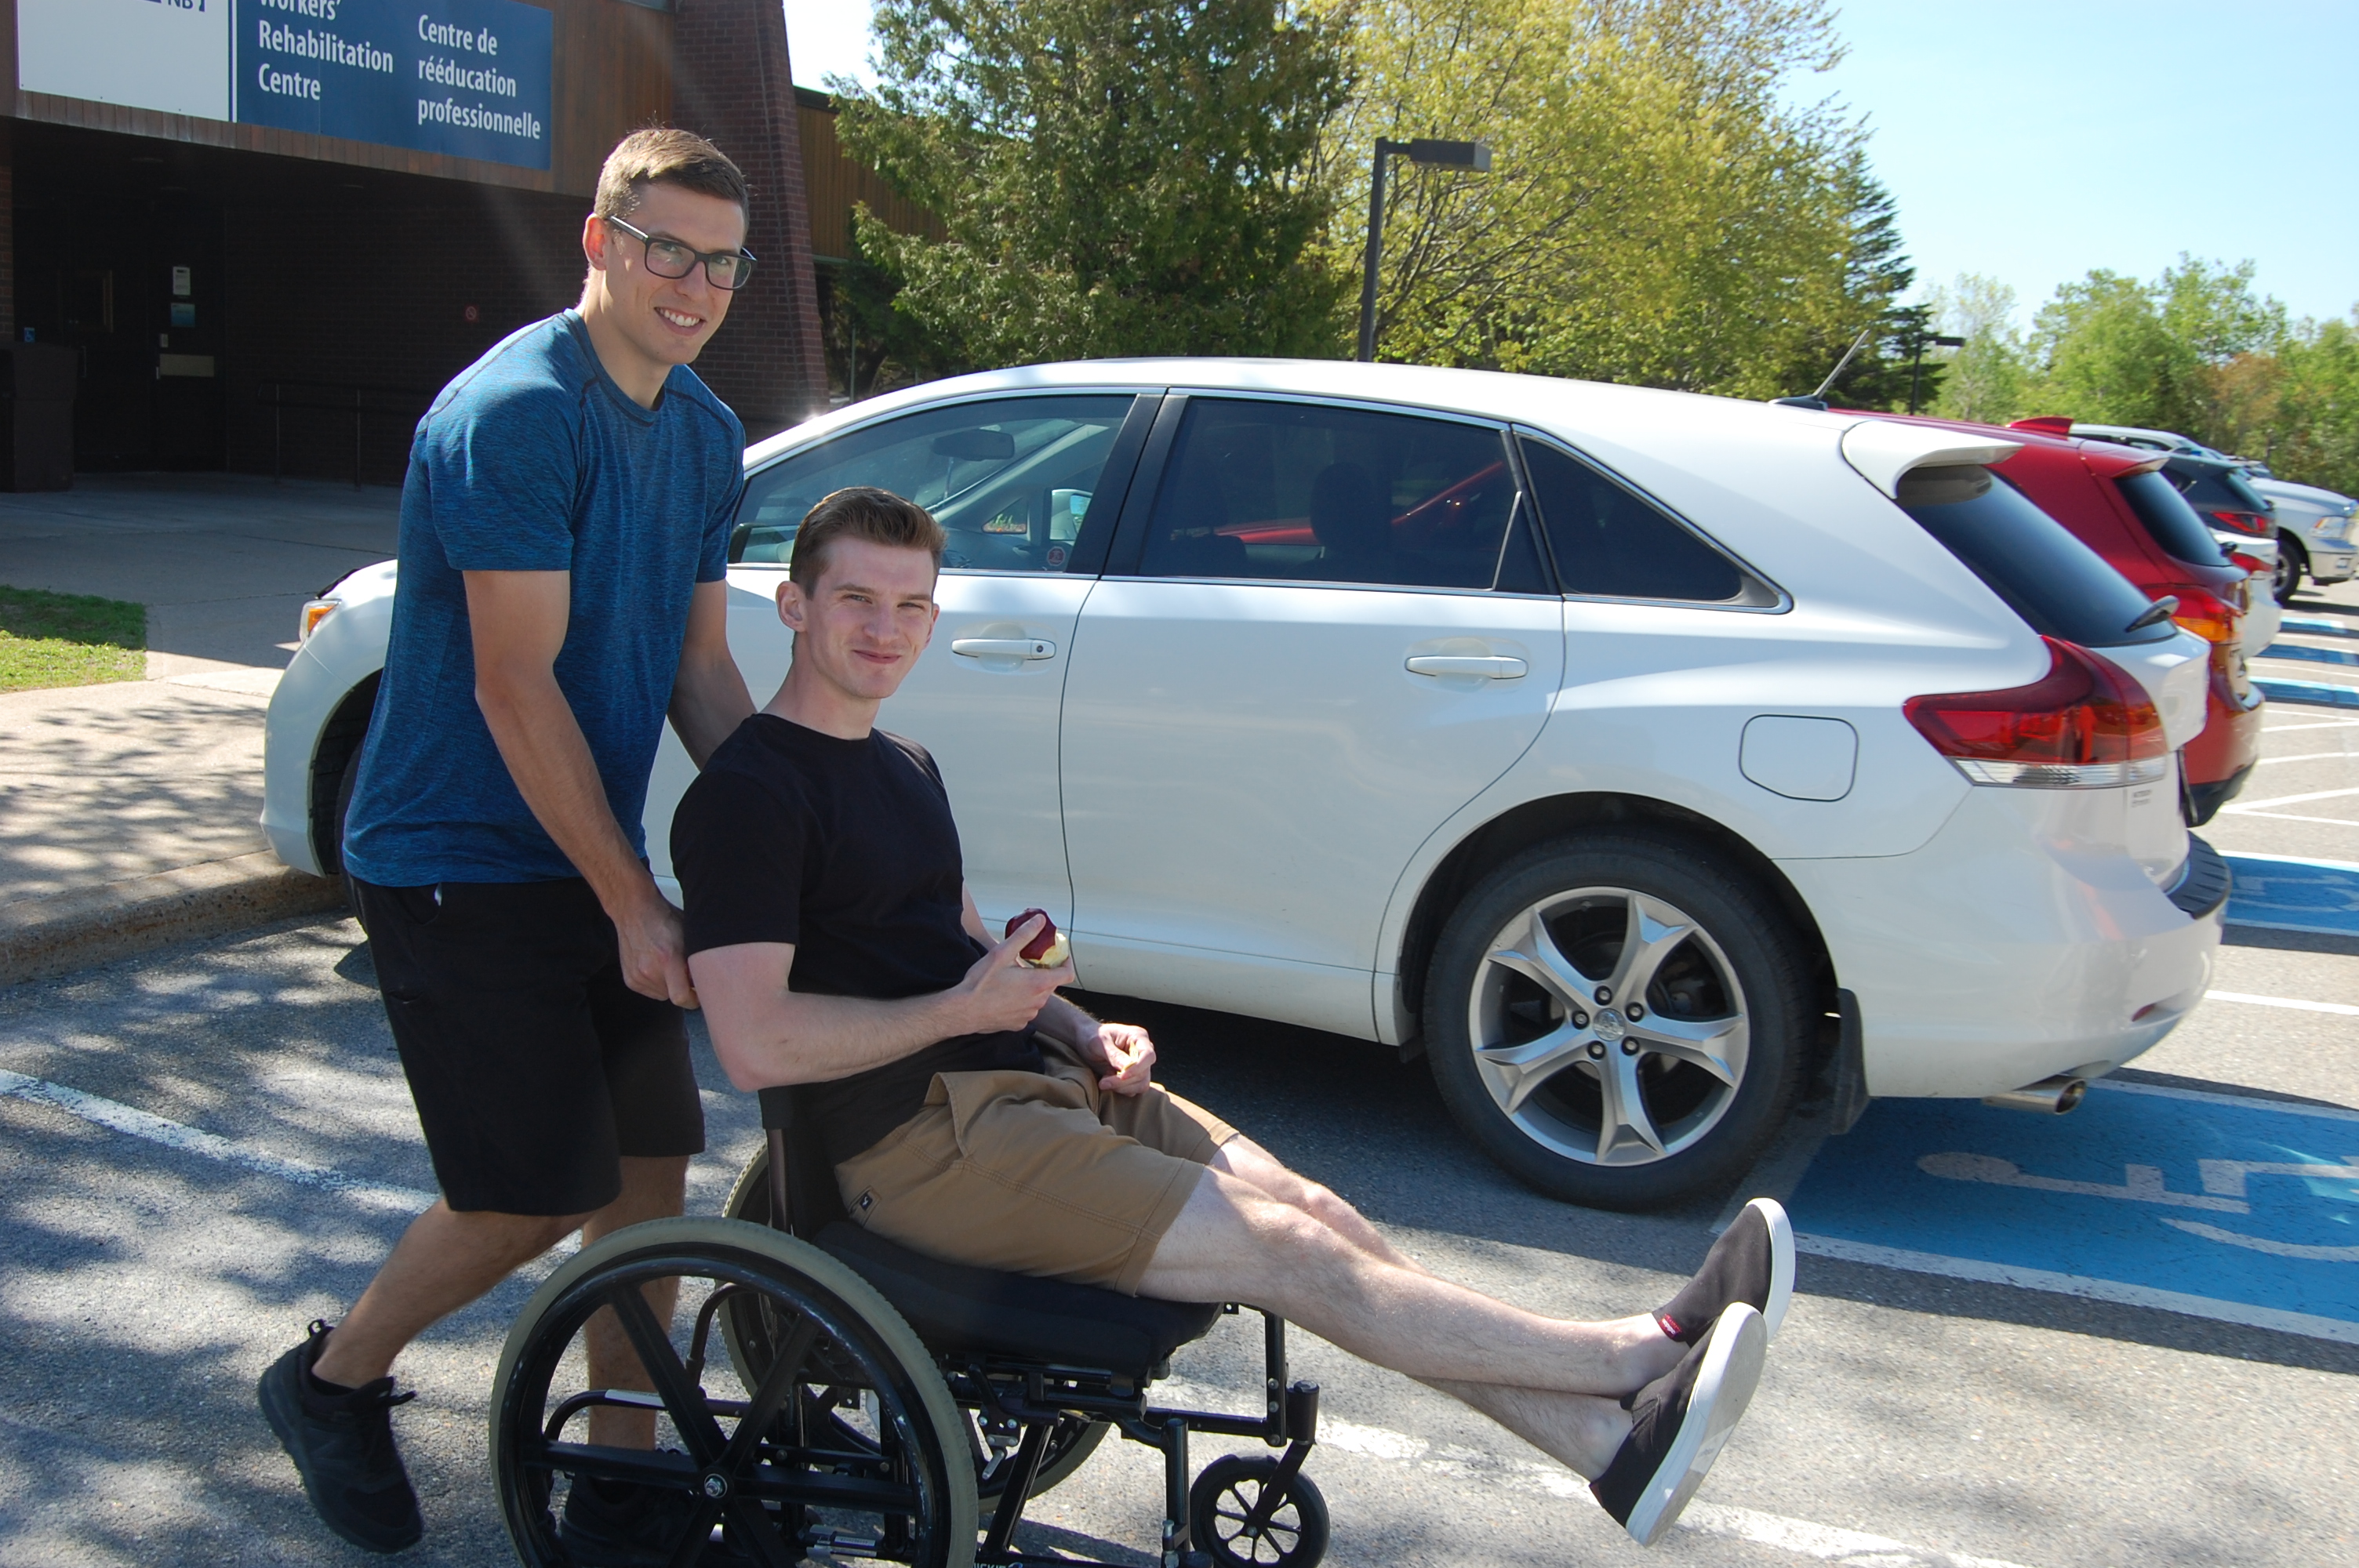 Un ergothérapeute de Travail sécuritaire NB, Andy West, aide Brandon Sloot, un stagiaire, à se déplacer en fauteuil roulant au Centre de rééducation de Travail sécuritaire NB à Grand Bay-Westfield.